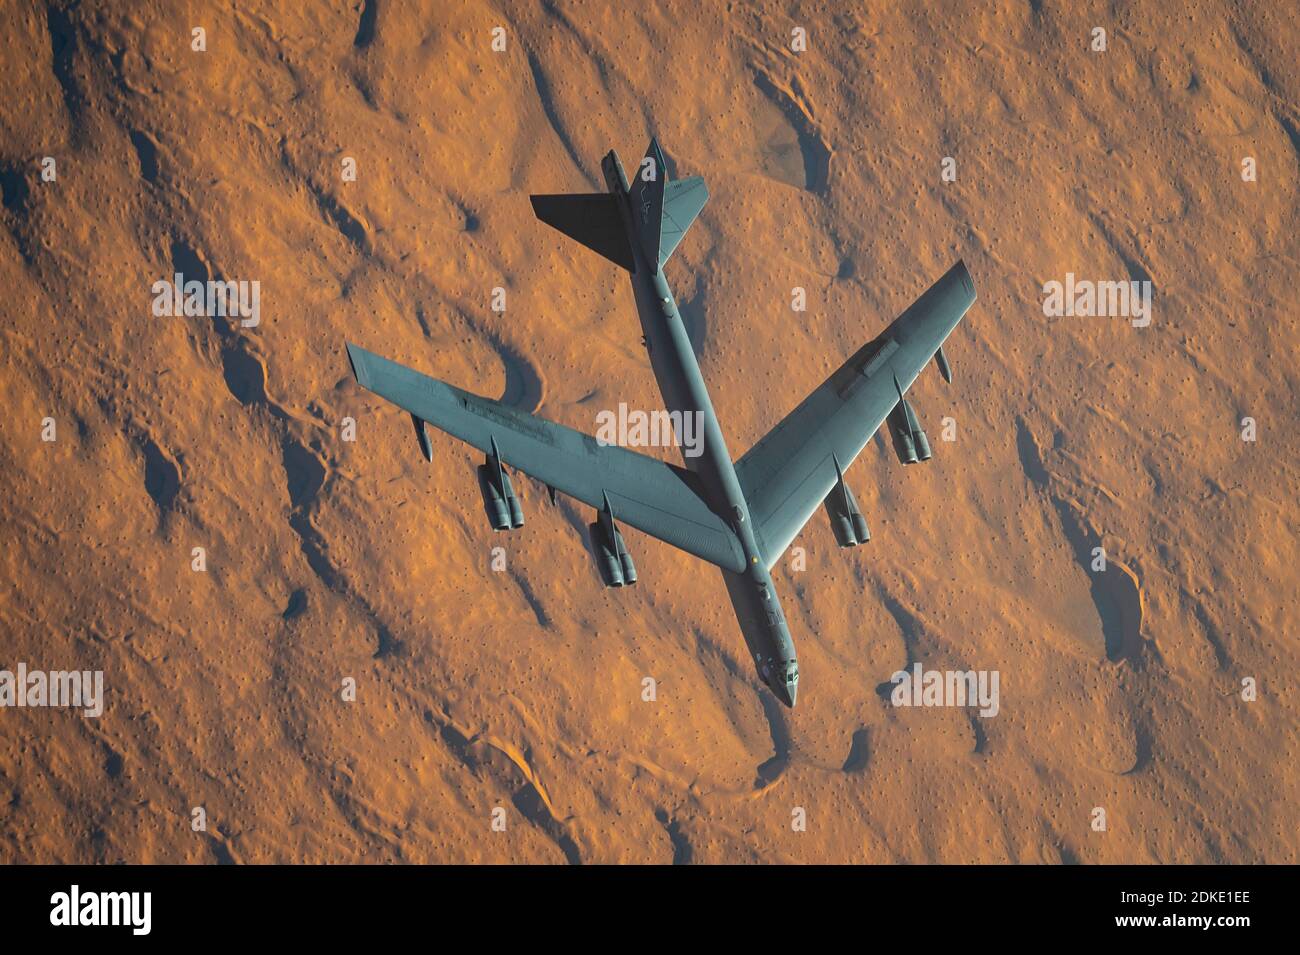 Un bombardier stratégique B-52 Stratofortress de la US Air Force part de la 2e Escadre Bomb après avoir été ravitaillé à bord d'un KC-135 Stratotanker lors d'une mission de la Force opérationnelle bombardier de plusieurs jours le 10 décembre 2020 au-dessus du Qatar. Le bombardier a été déplacé dans la région à la suite d'une augmentation des tensions avec l'Iran. Banque D'Images